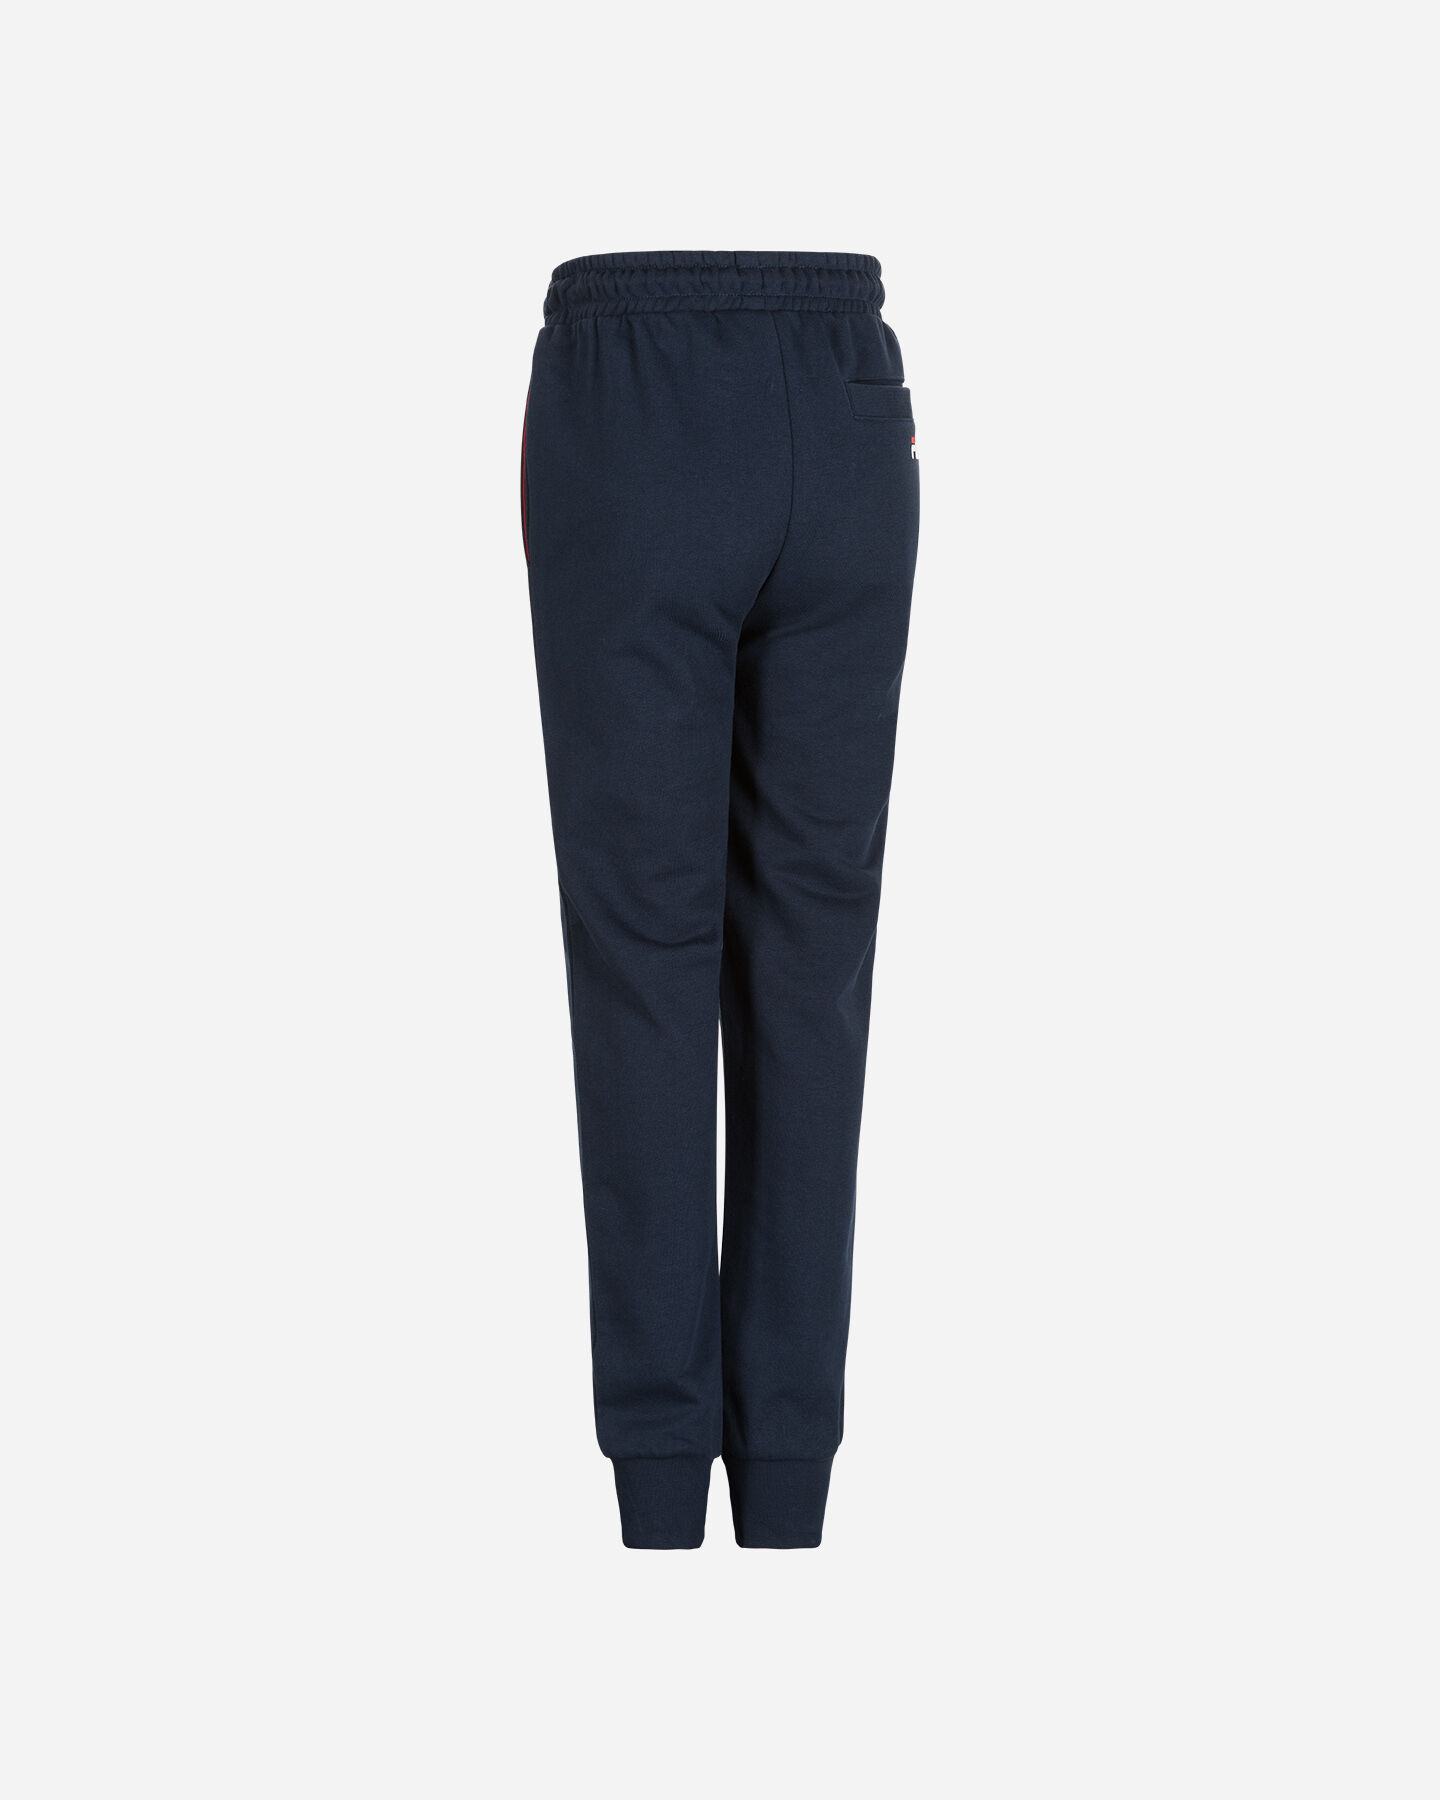  Pantalone FILA SMALL LOGO JR S4088602|519|4A scatto 1